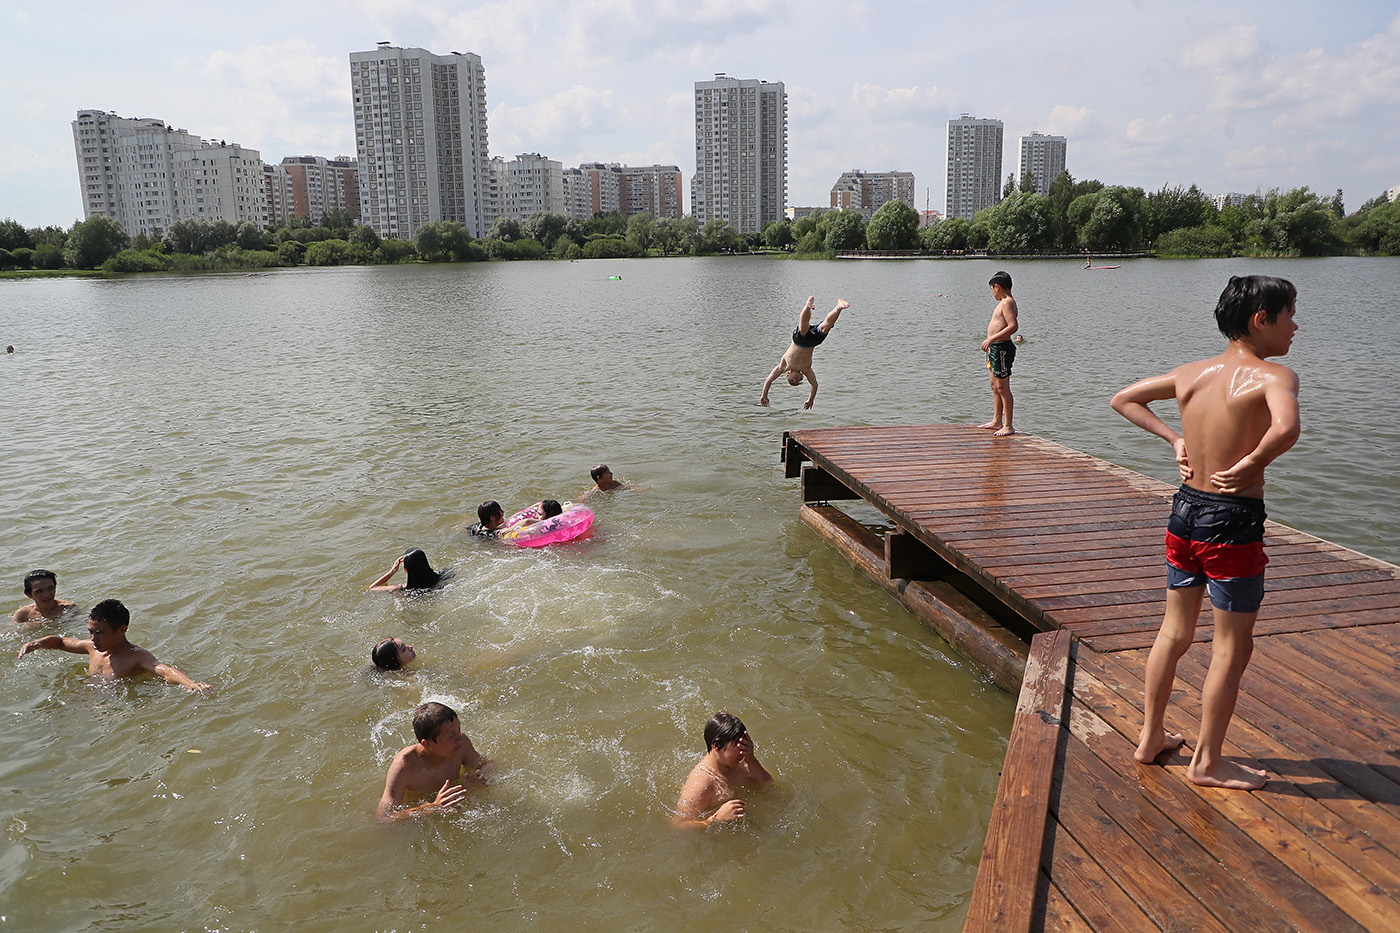 Люди жарким днем на пруду в Москве. Фото дня